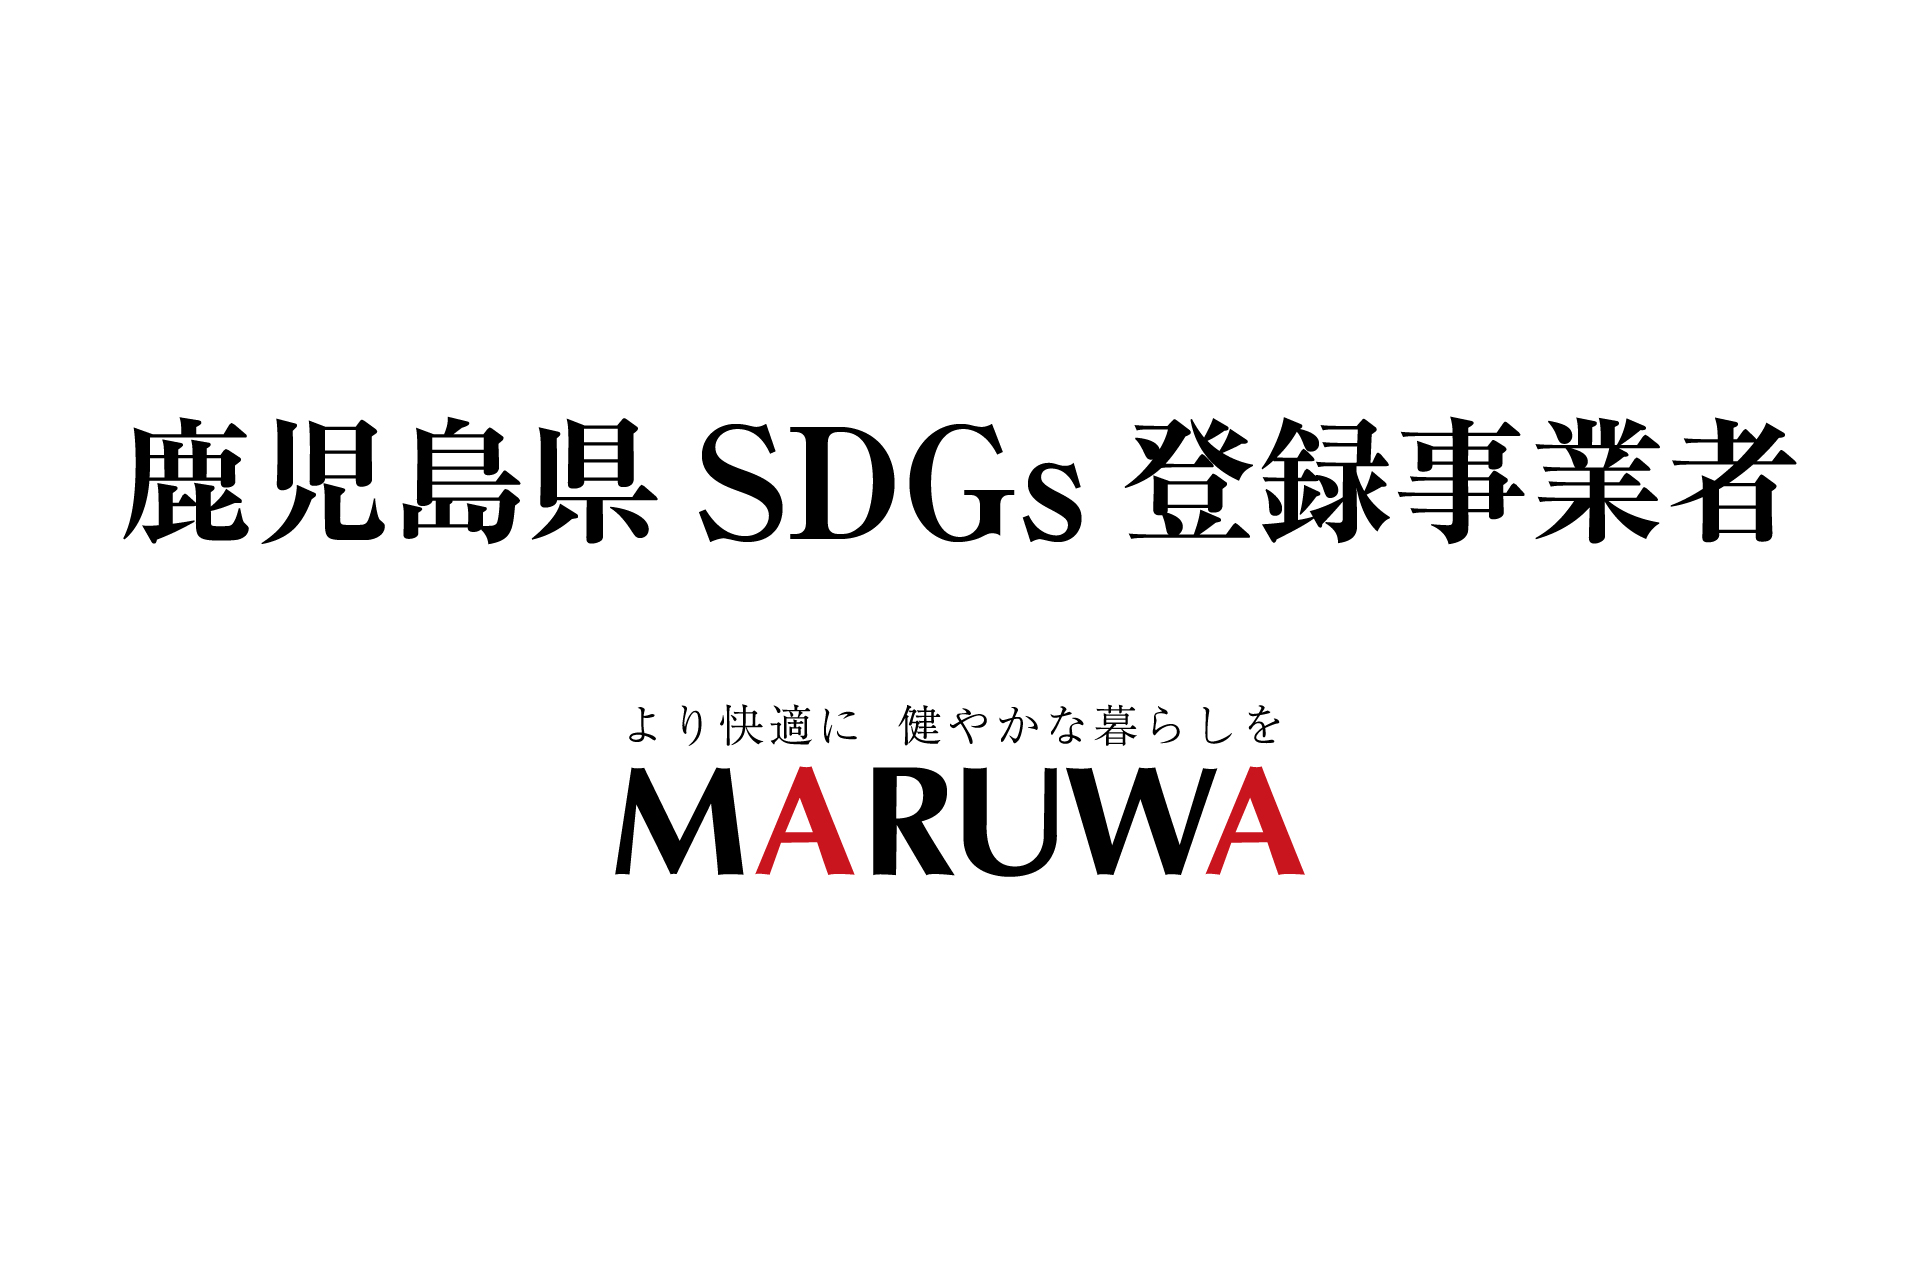 「鹿児島県SDGs登録事業者」への登録について